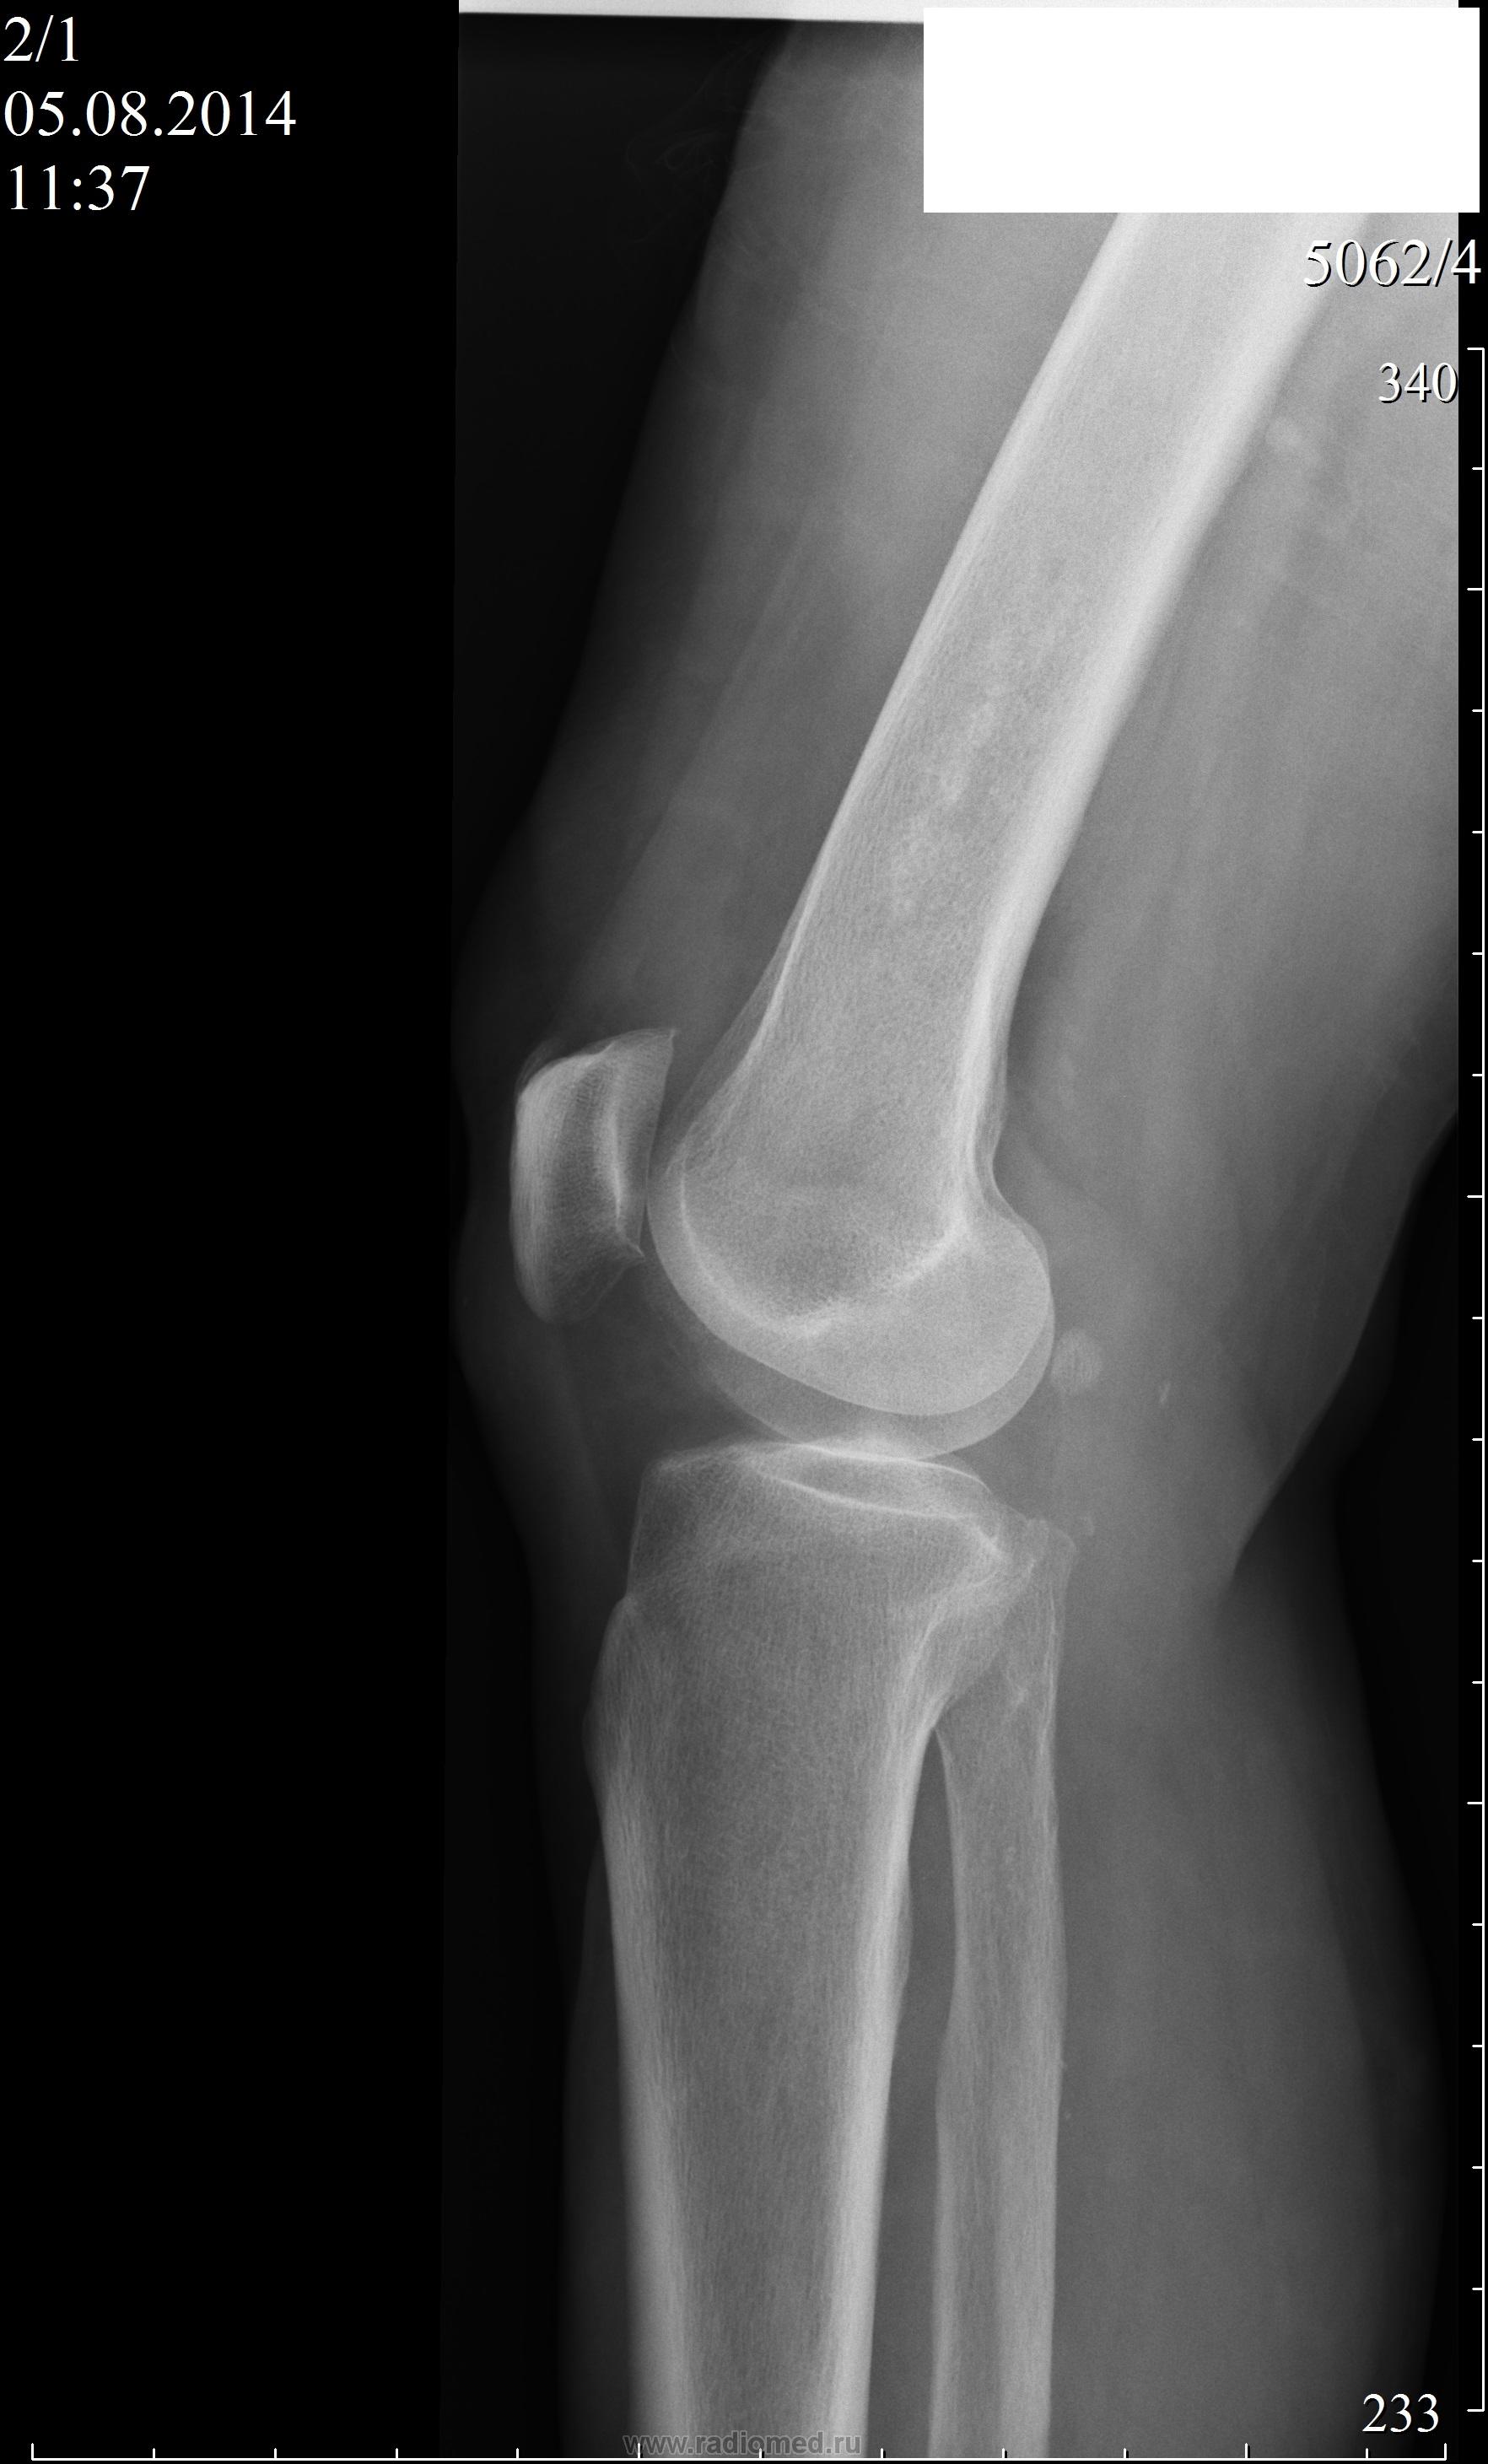 Рентген колена. Синовиома коленного сустава рентген. Остеопойкилия коленного сустава рентген. Рентген коленного сустава в двух проекциях. Рентген коленного сустава с функциональными пробами.